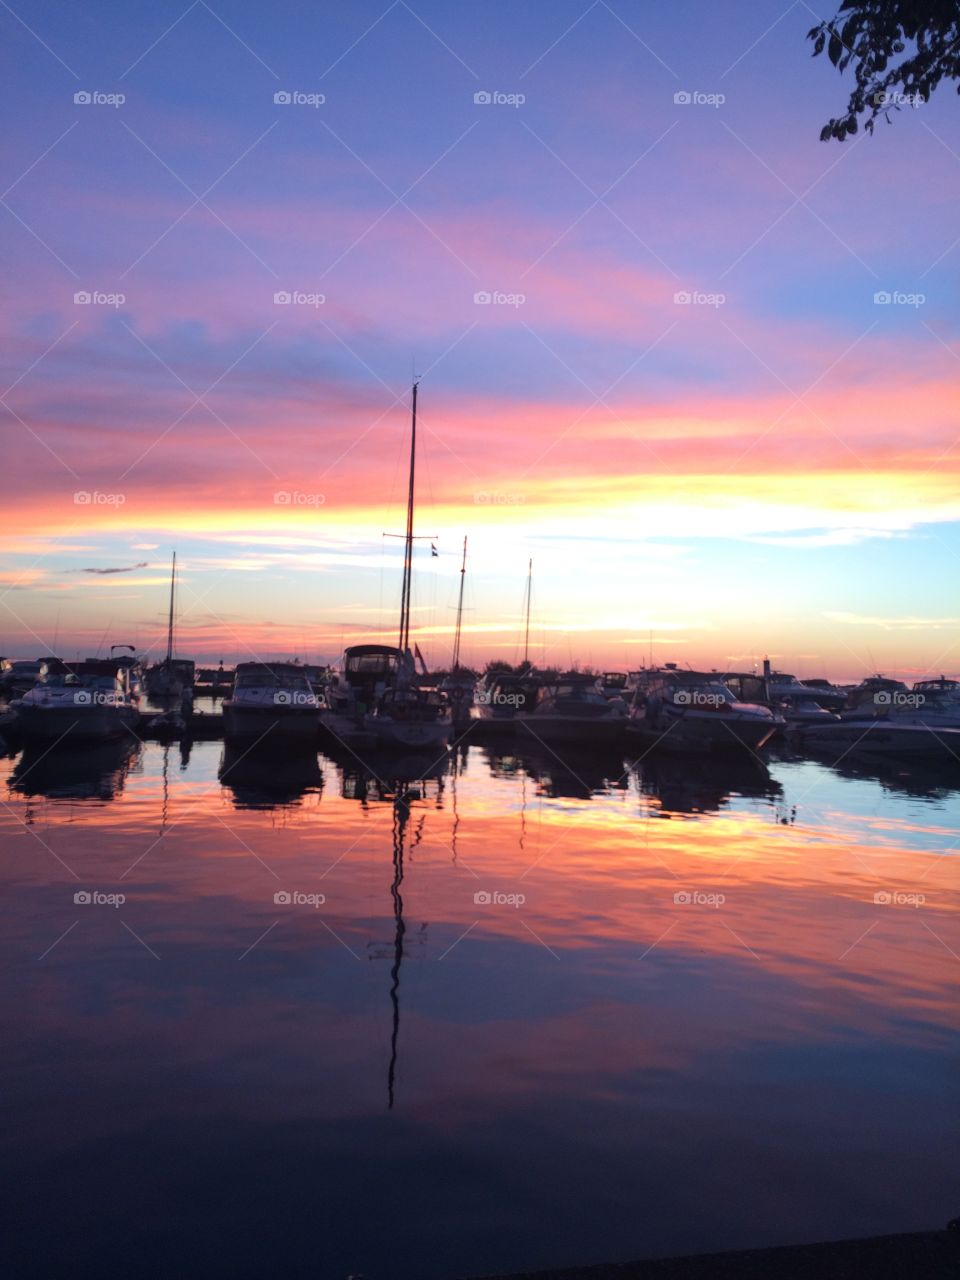 Marina sunset 